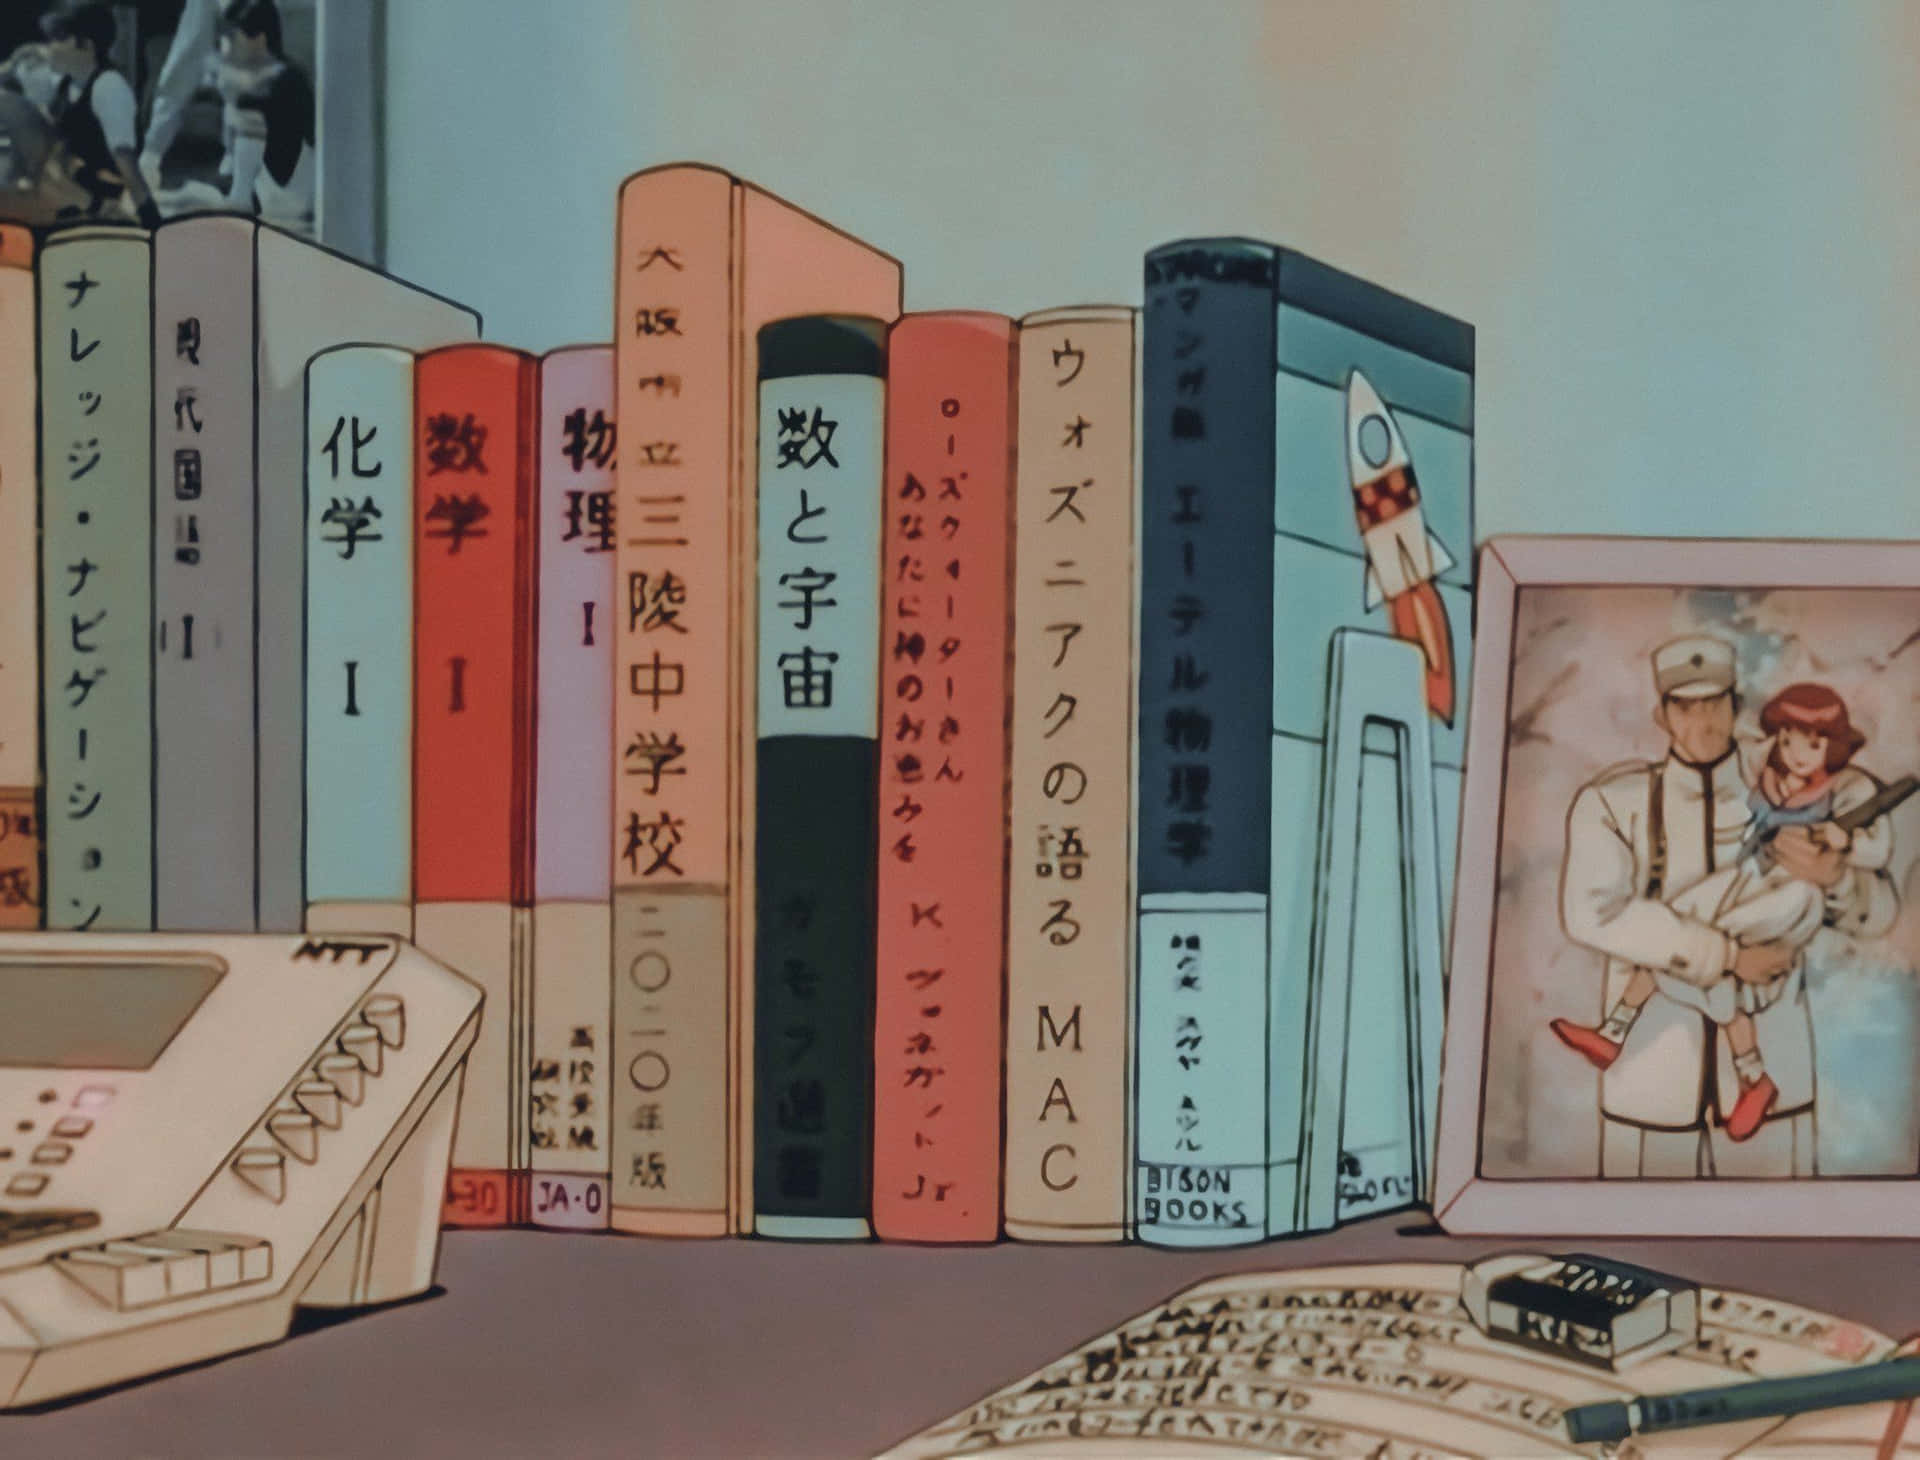 Retro Anime Bookshelf Aesthetic Wallpaper